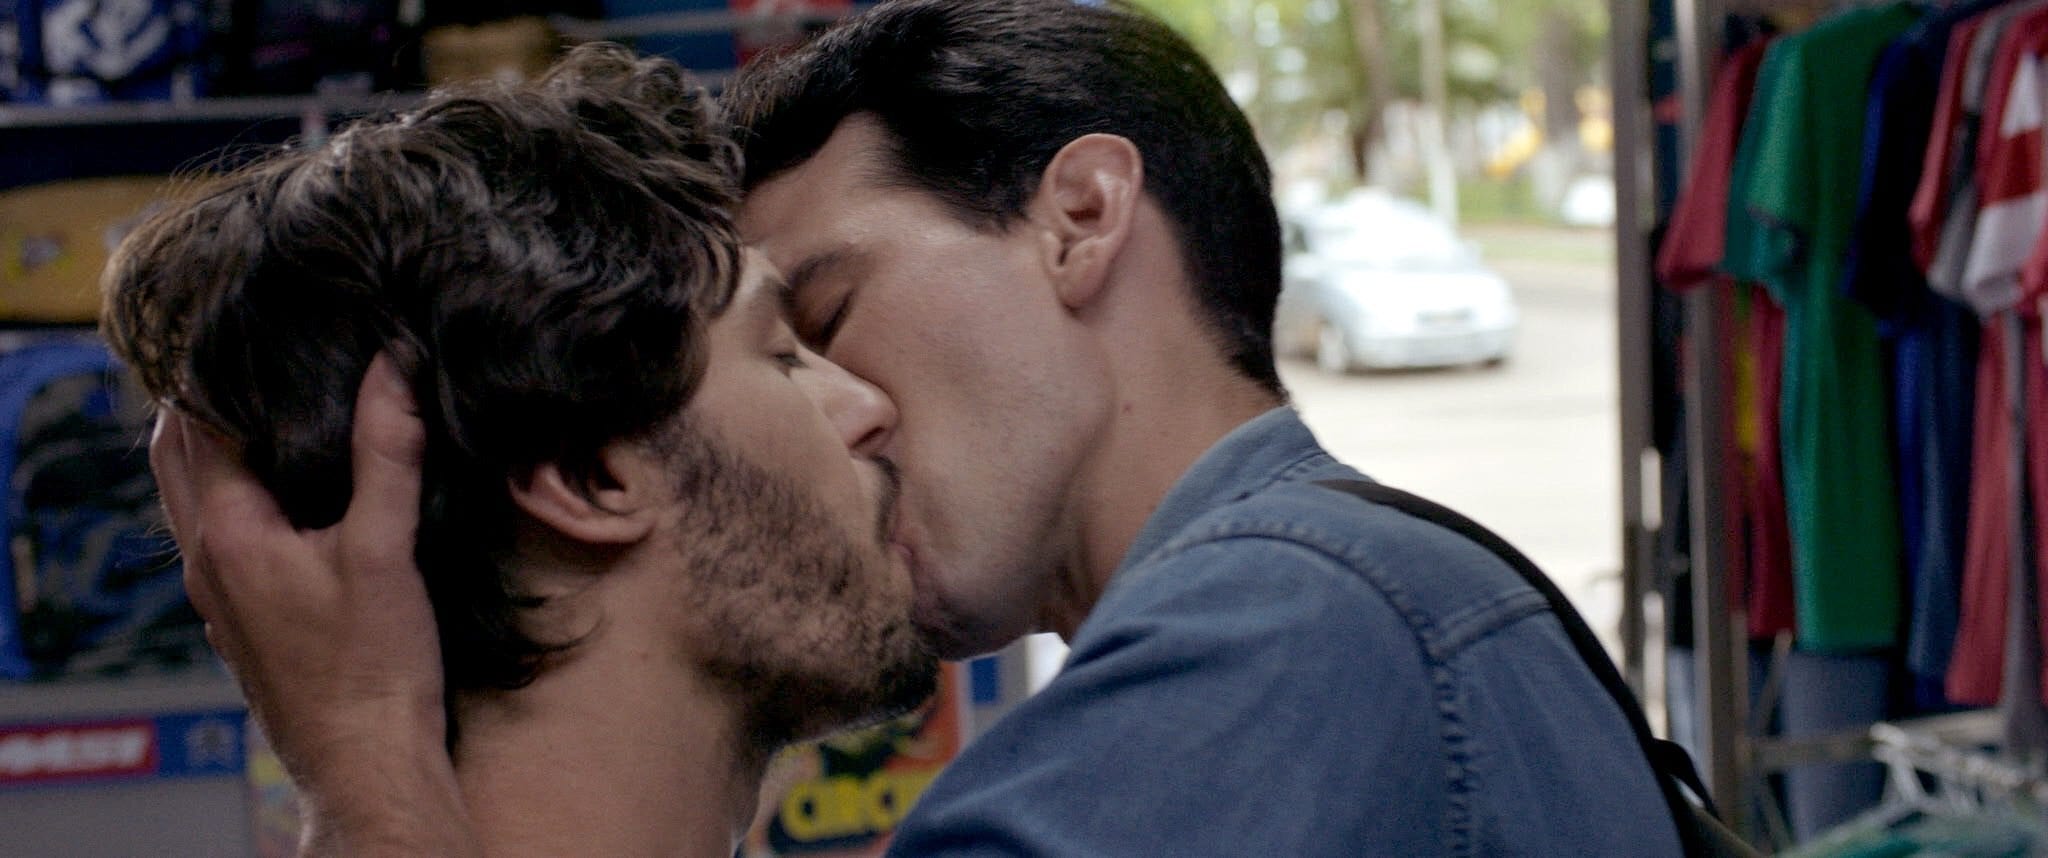 Still from gay film, Esteros